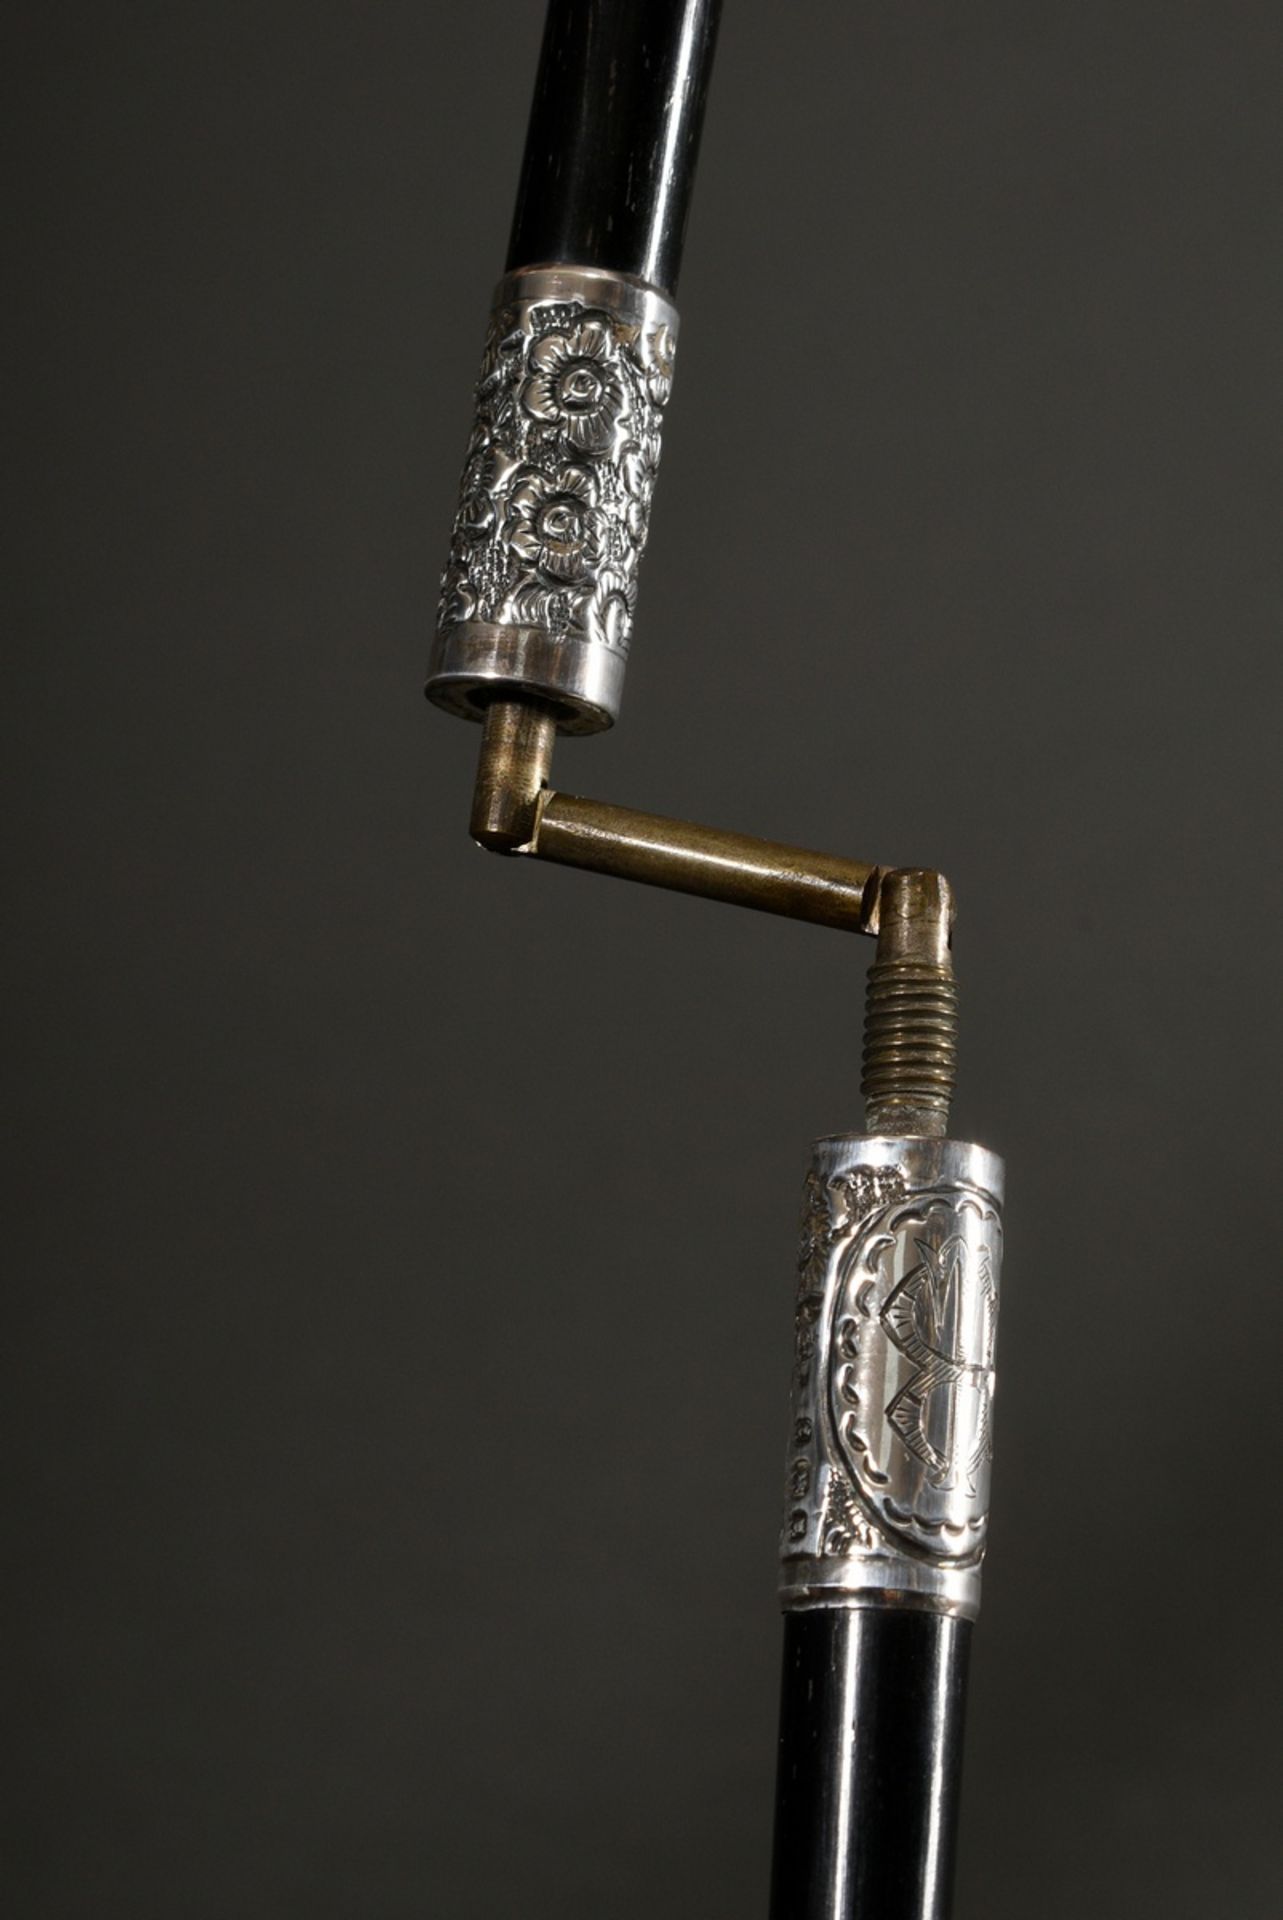 Dirigentenstab in Original Leder Etui, ebonisierter Holz Schaft mit floral ornamentierten Silber 92 - Bild 5 aus 7